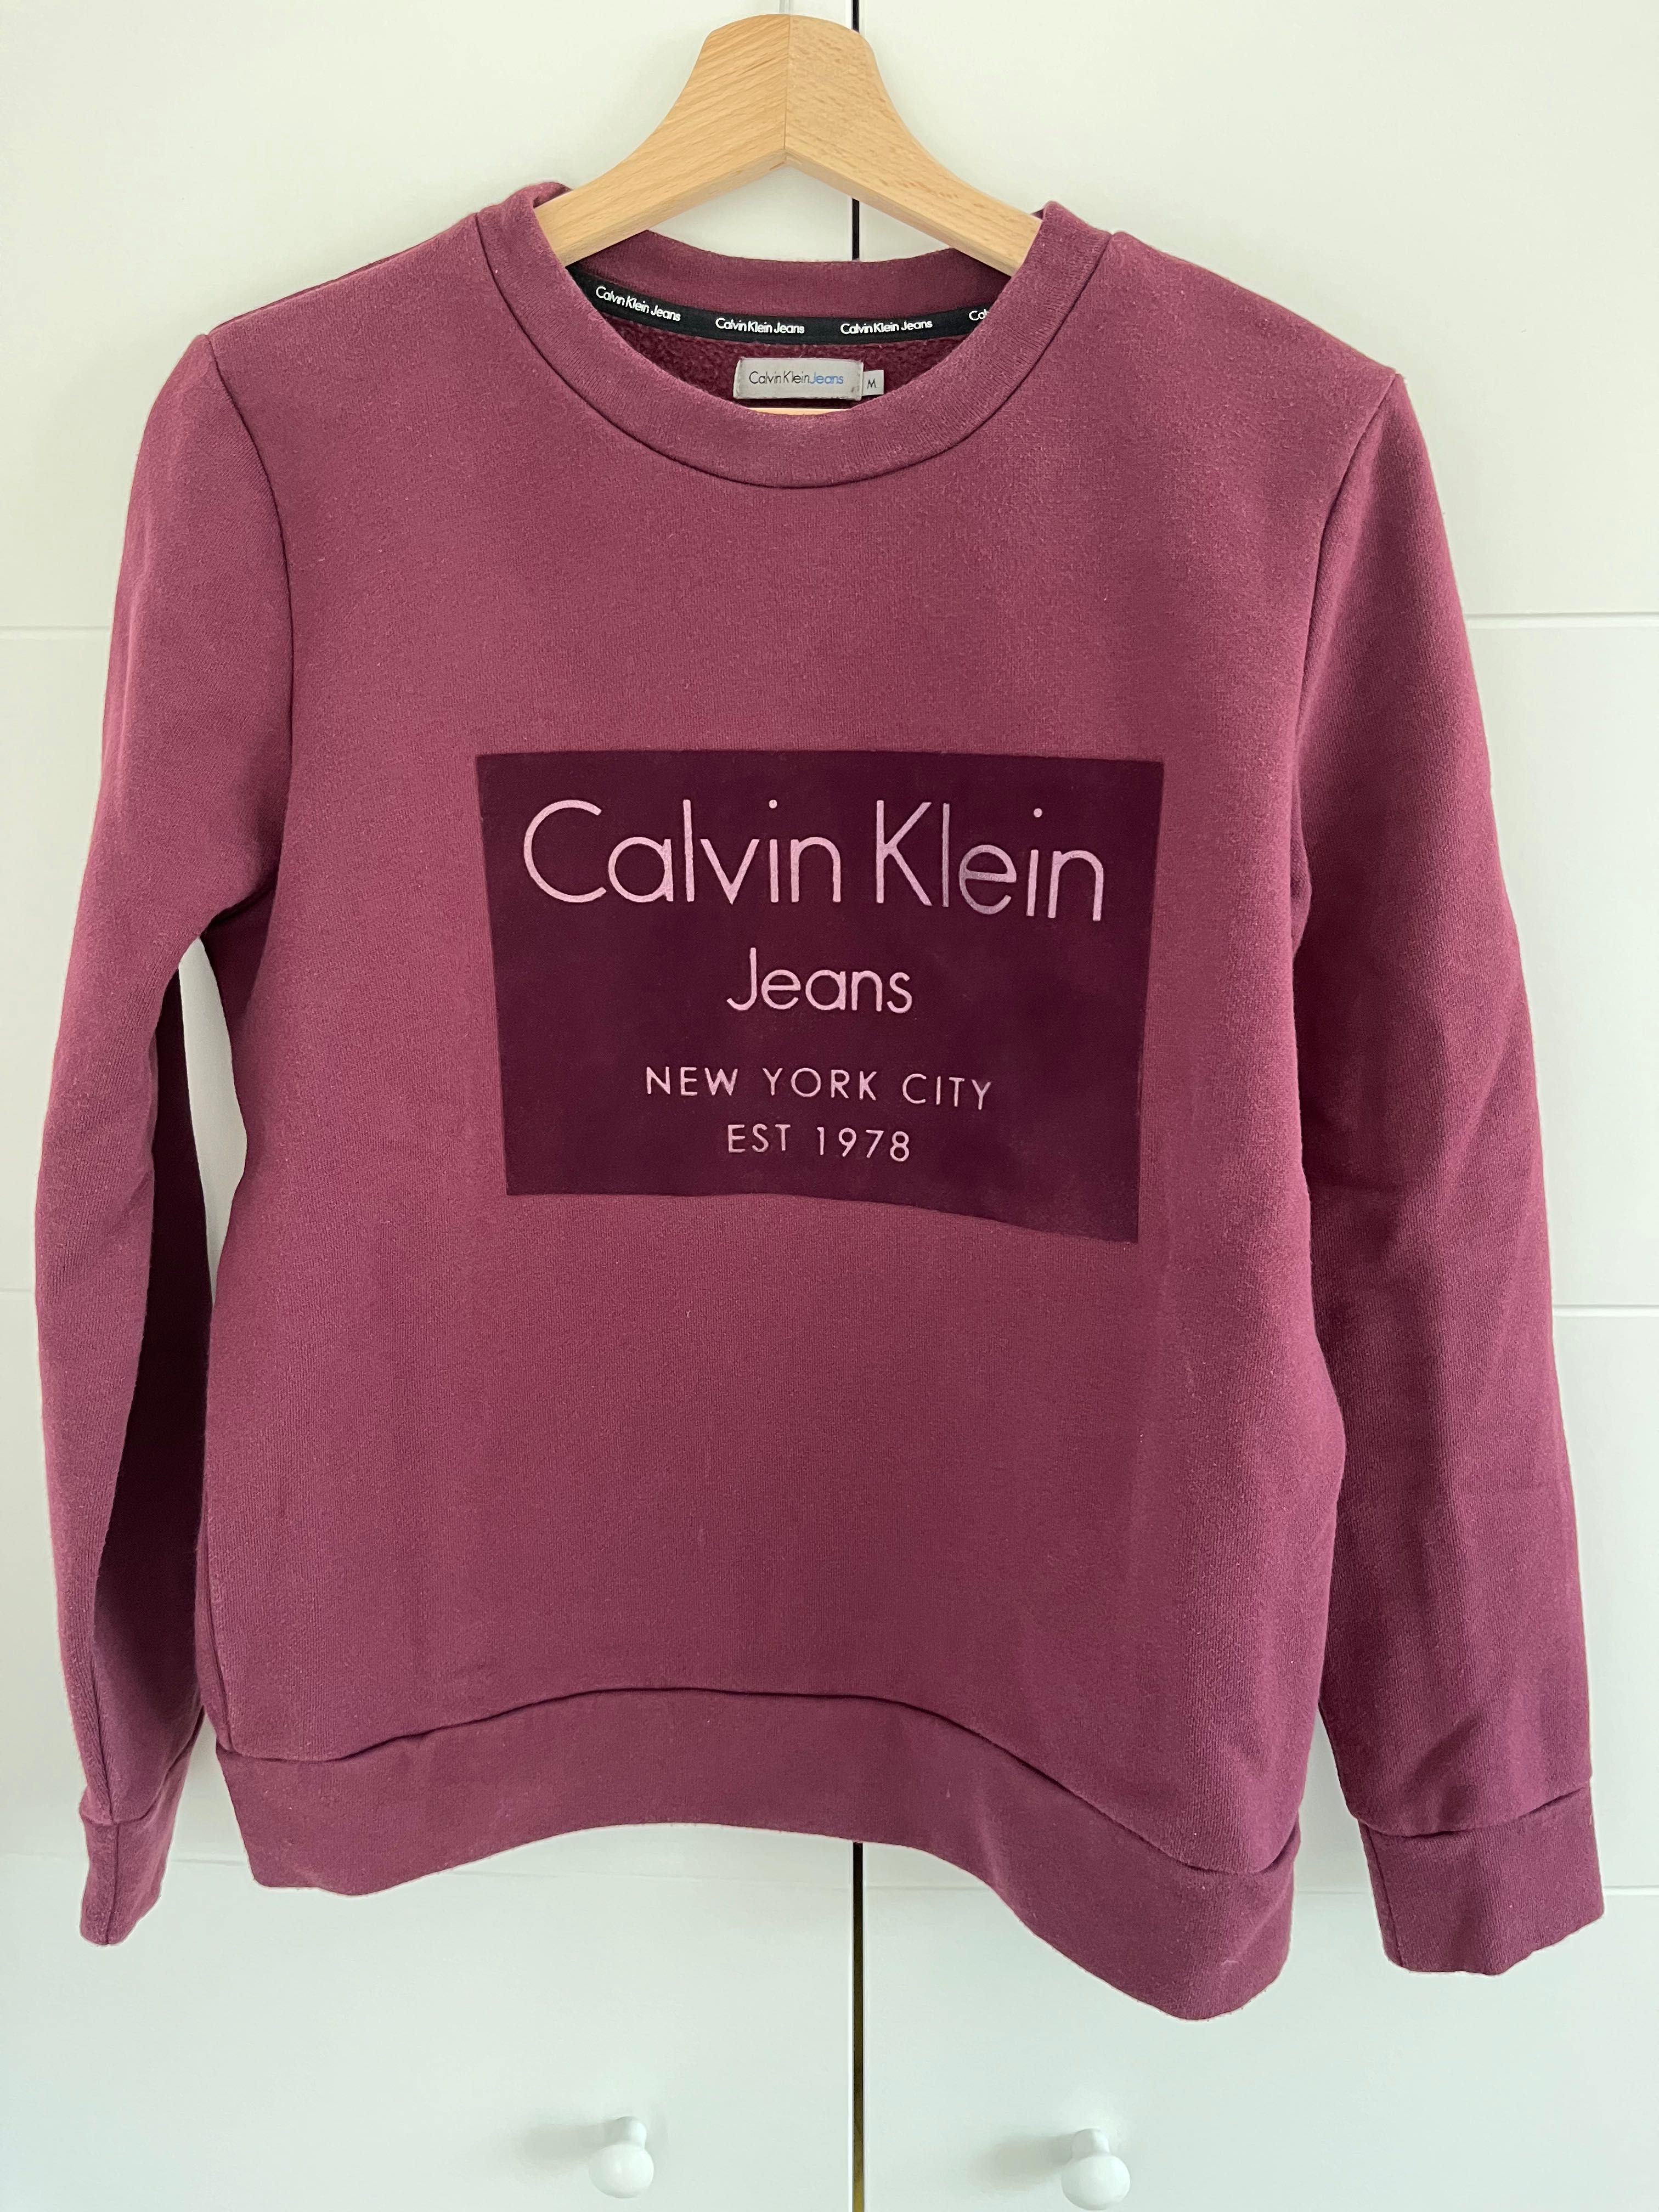 Bluza Calvin Klein S/M